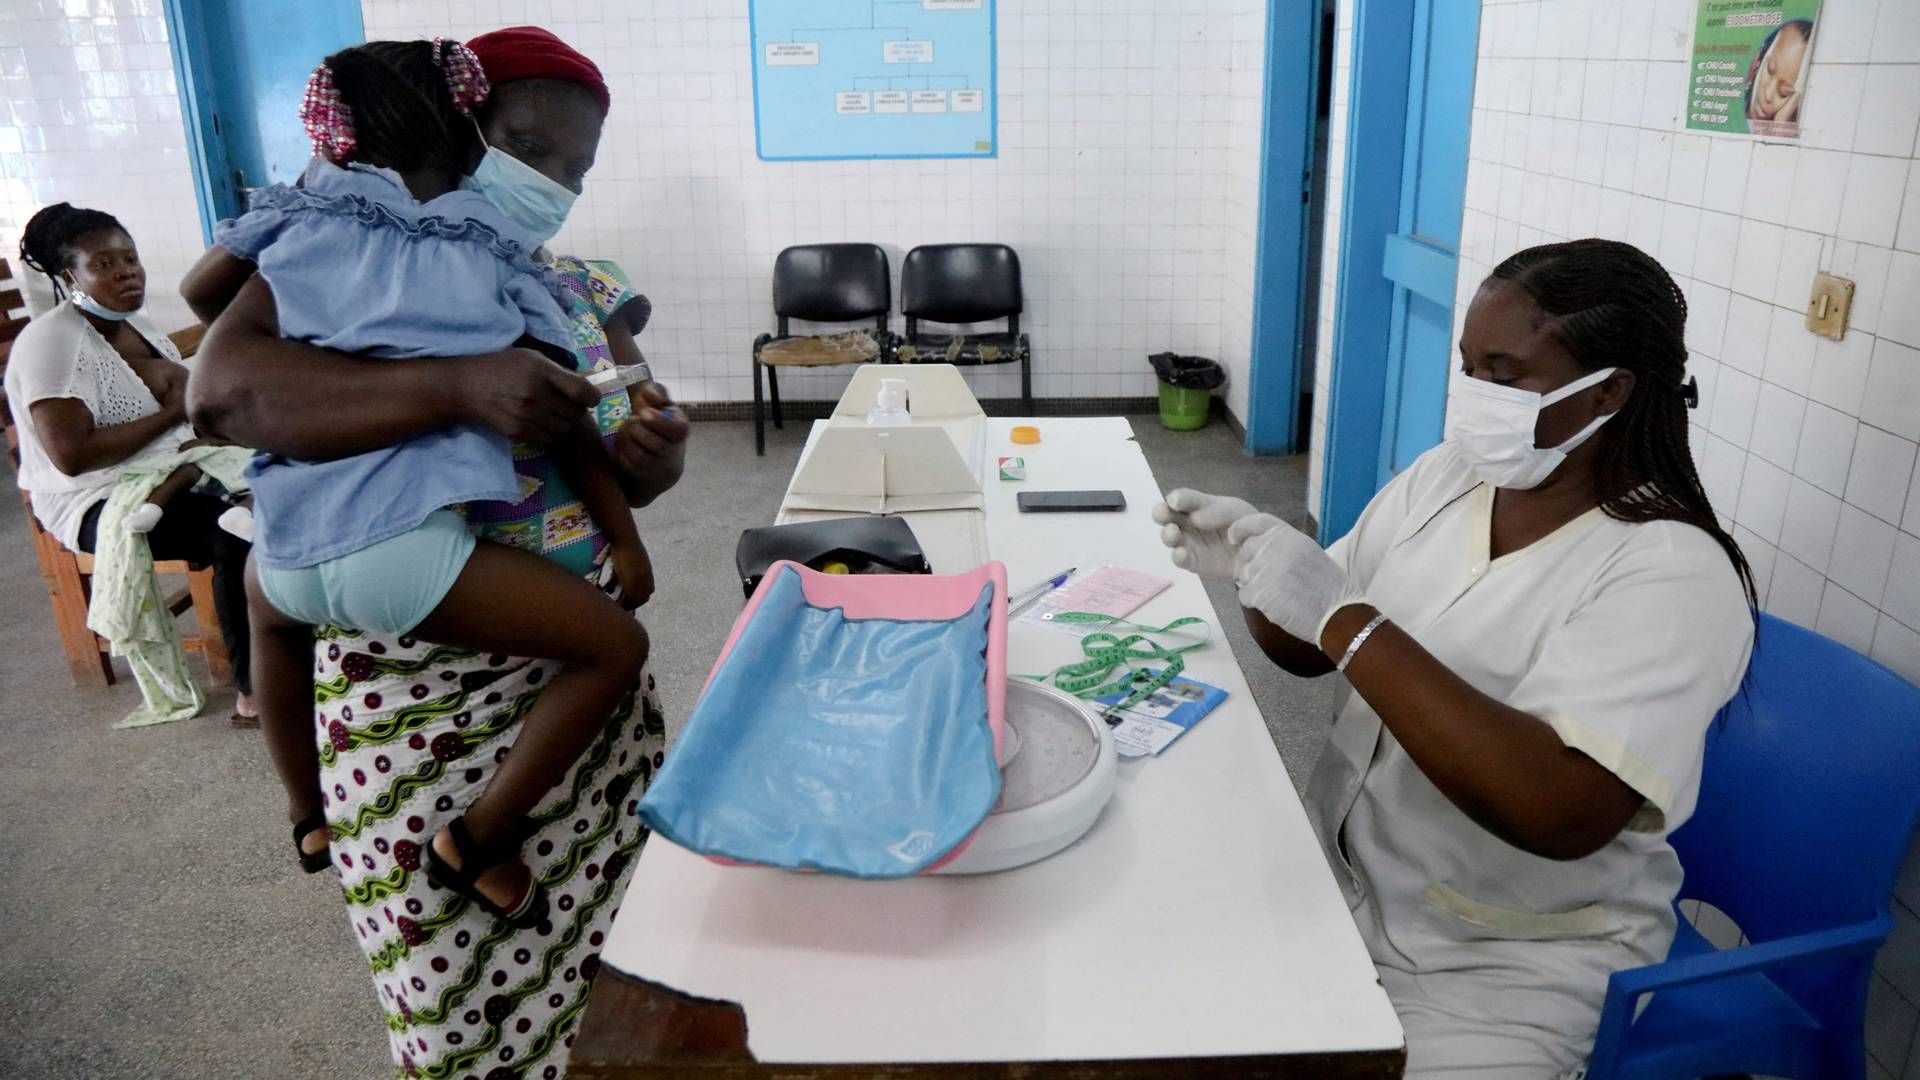 Forskere vurdere, at omkring 20 mio. mennesker har overlevet coronapandemien på grund af vacciner. | Foto: LUC GNAGO/REUTERS / X01459